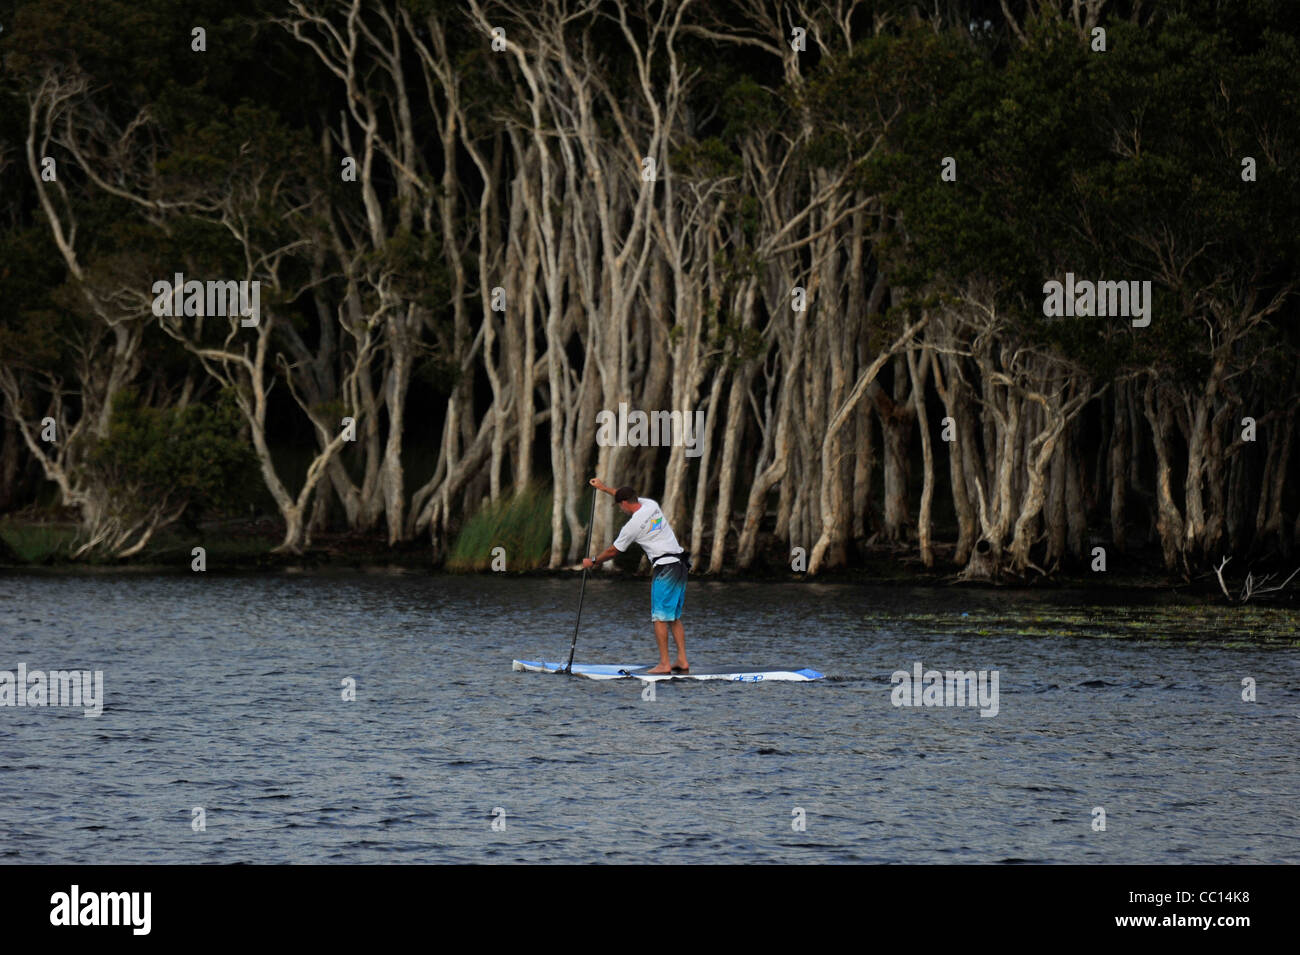 Un homme d'une des palettes paddle board sur un lac d'eau douce avec Paperbark forêt derrière. Banque D'Images